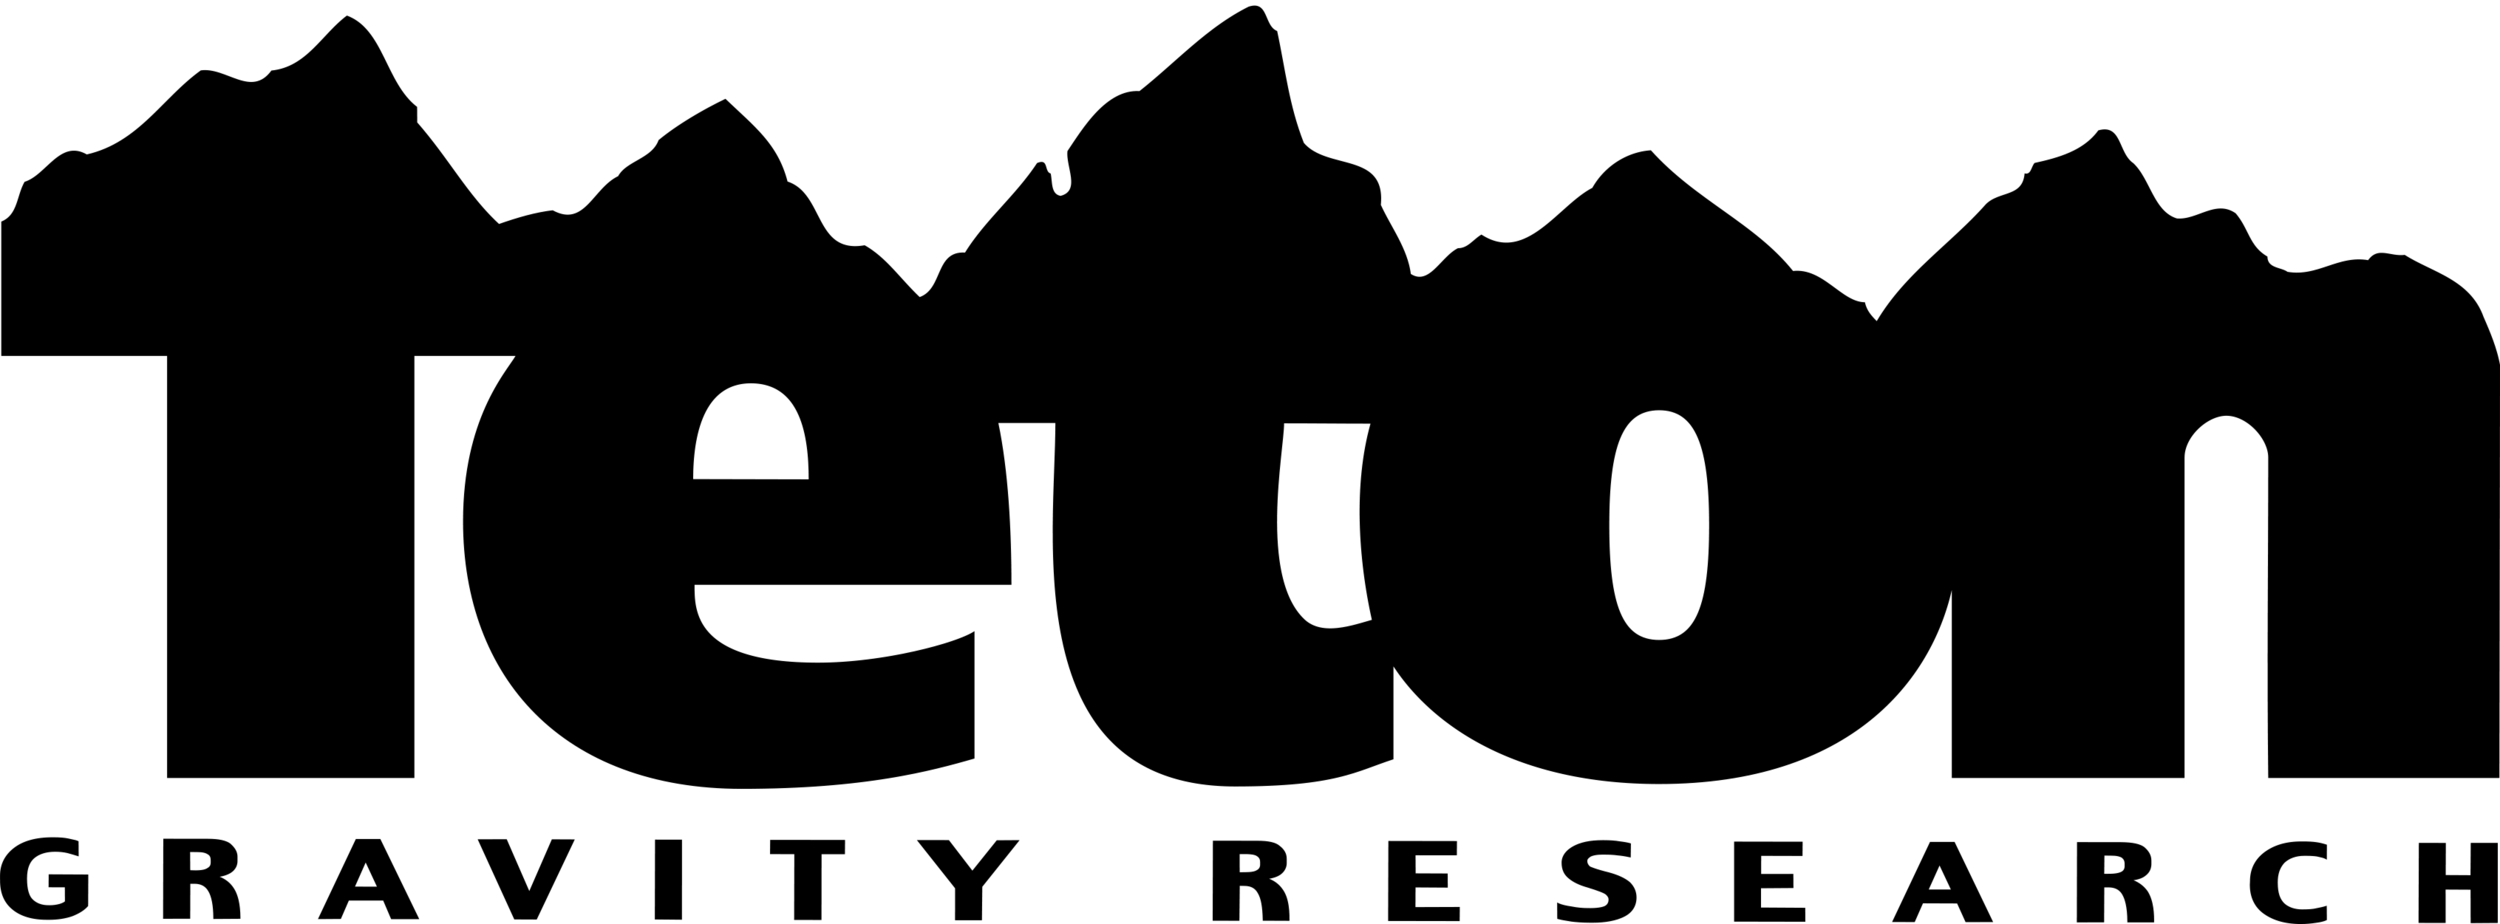 Teton-Gravity-Research-Logo-black.png